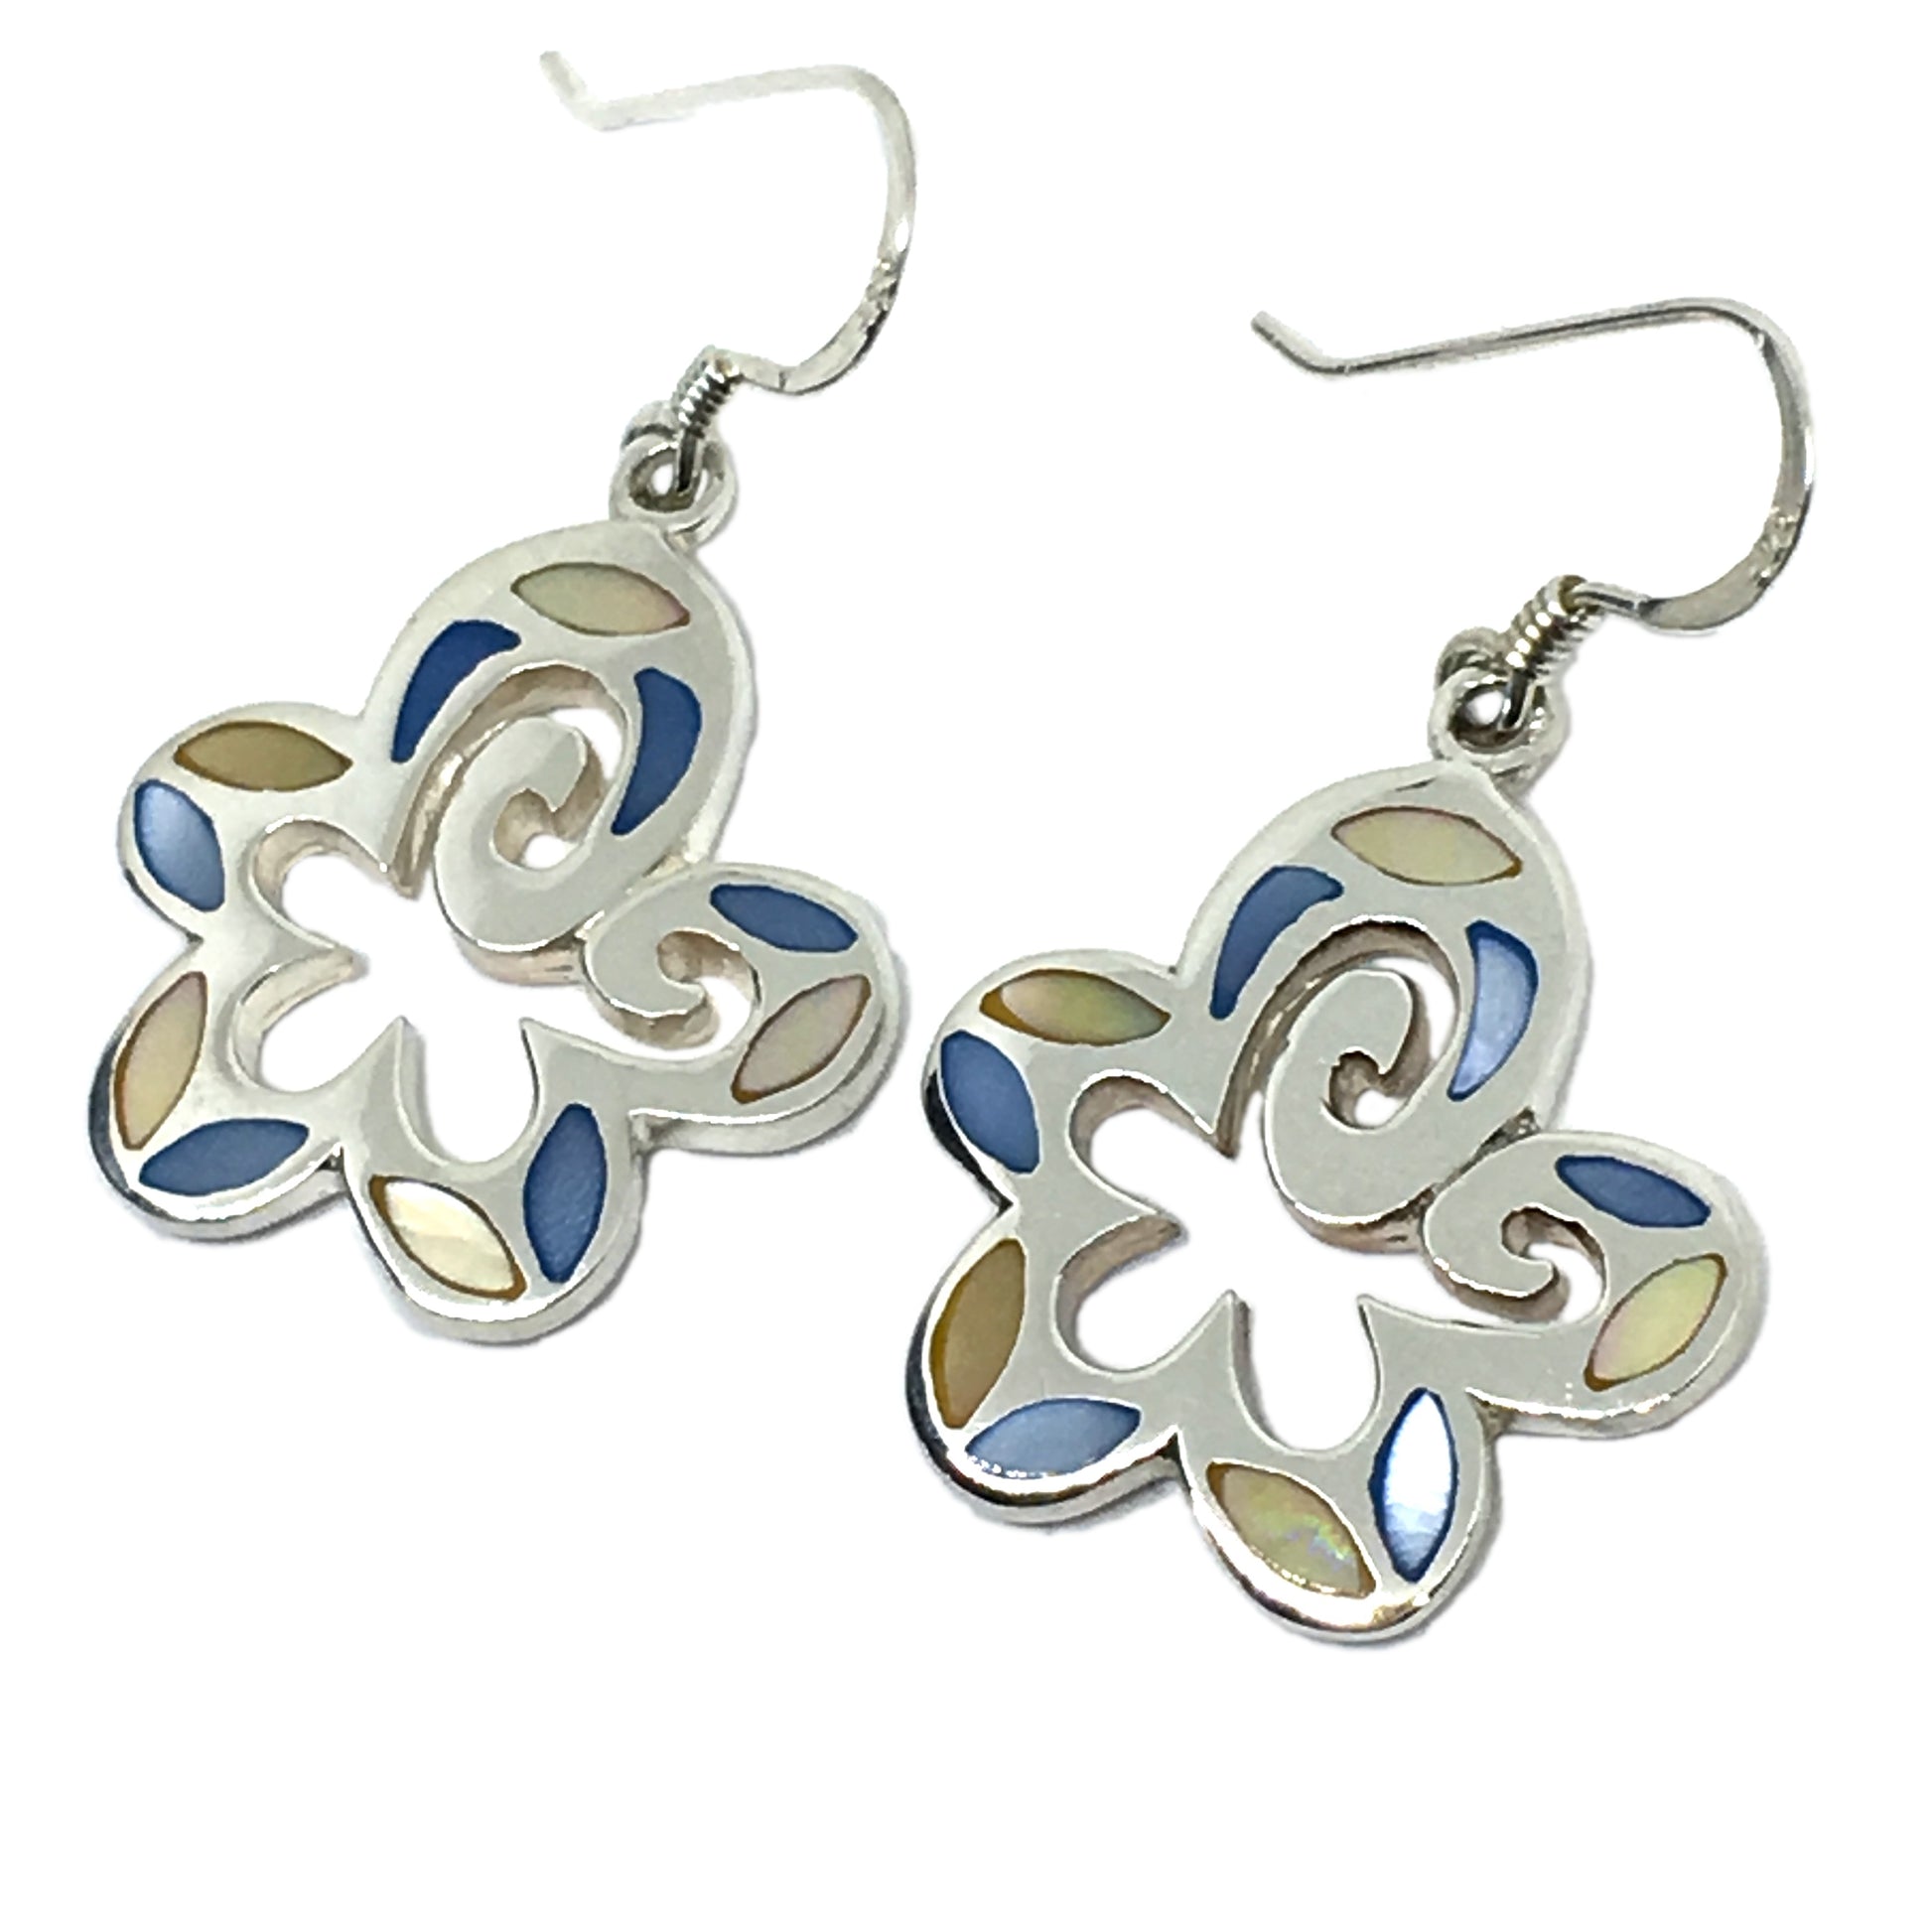 Dangle Earrings - Womens Fun & Flirty Pearl Flower Cut-out Design Sterling Silver Dangle Earrings - Blingschlingers.com - USA